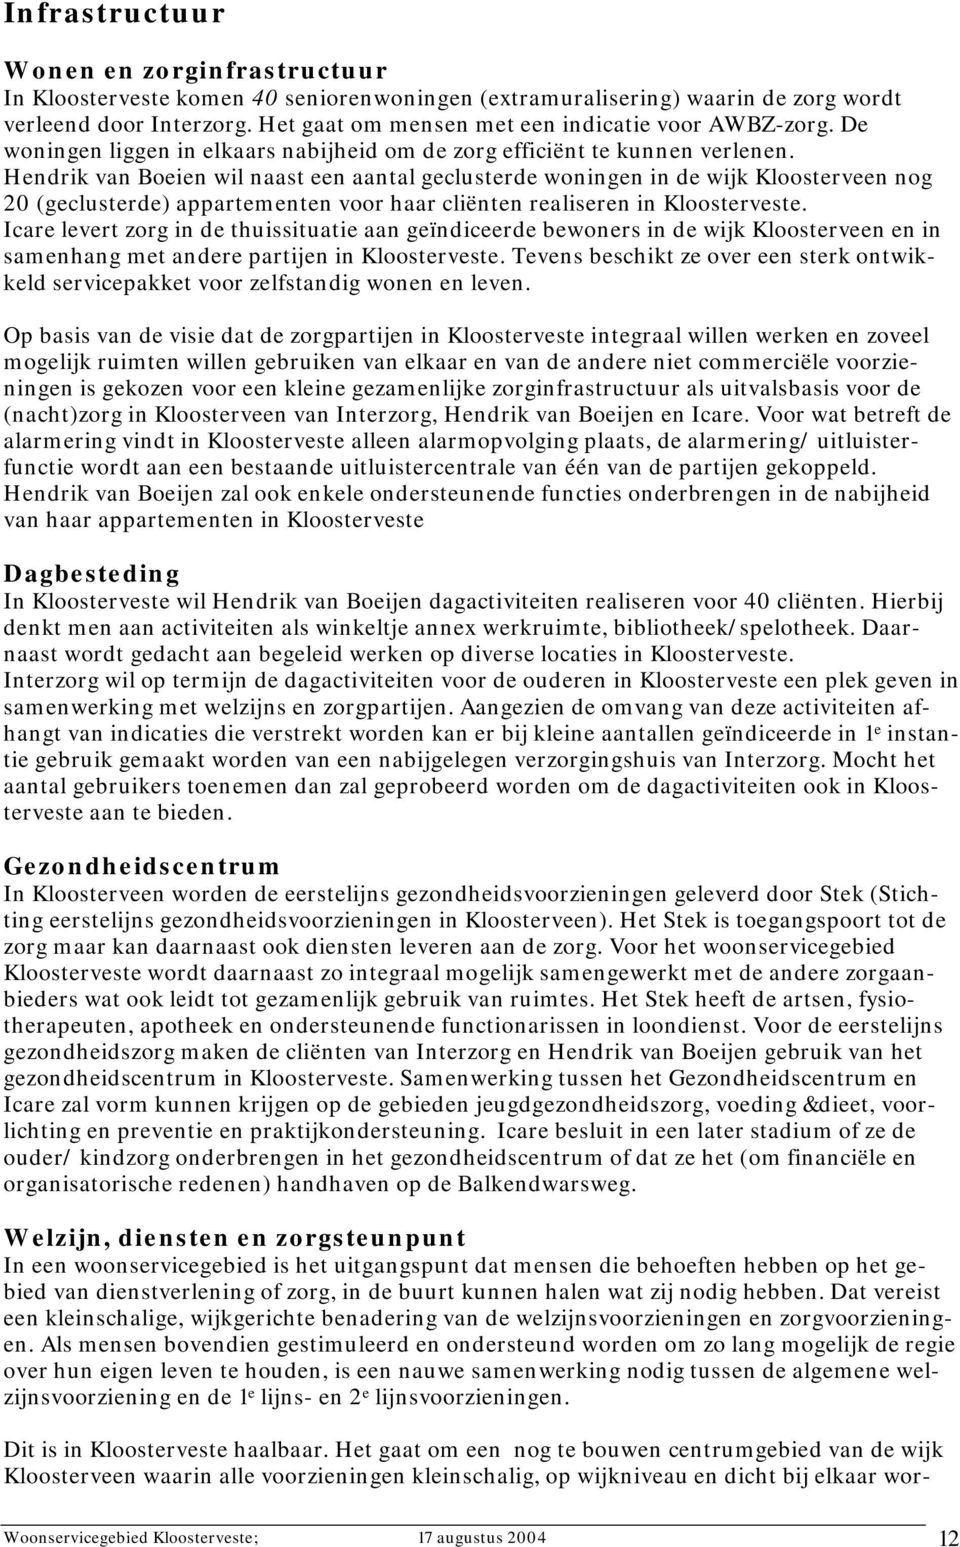 Hendrik van Boeien wil naast een aantal geclusterde woningen in de wijk Kloosterveen nog 20 (geclusterde) appartementen voor haar cliënten realiseren in Kloosterveste.